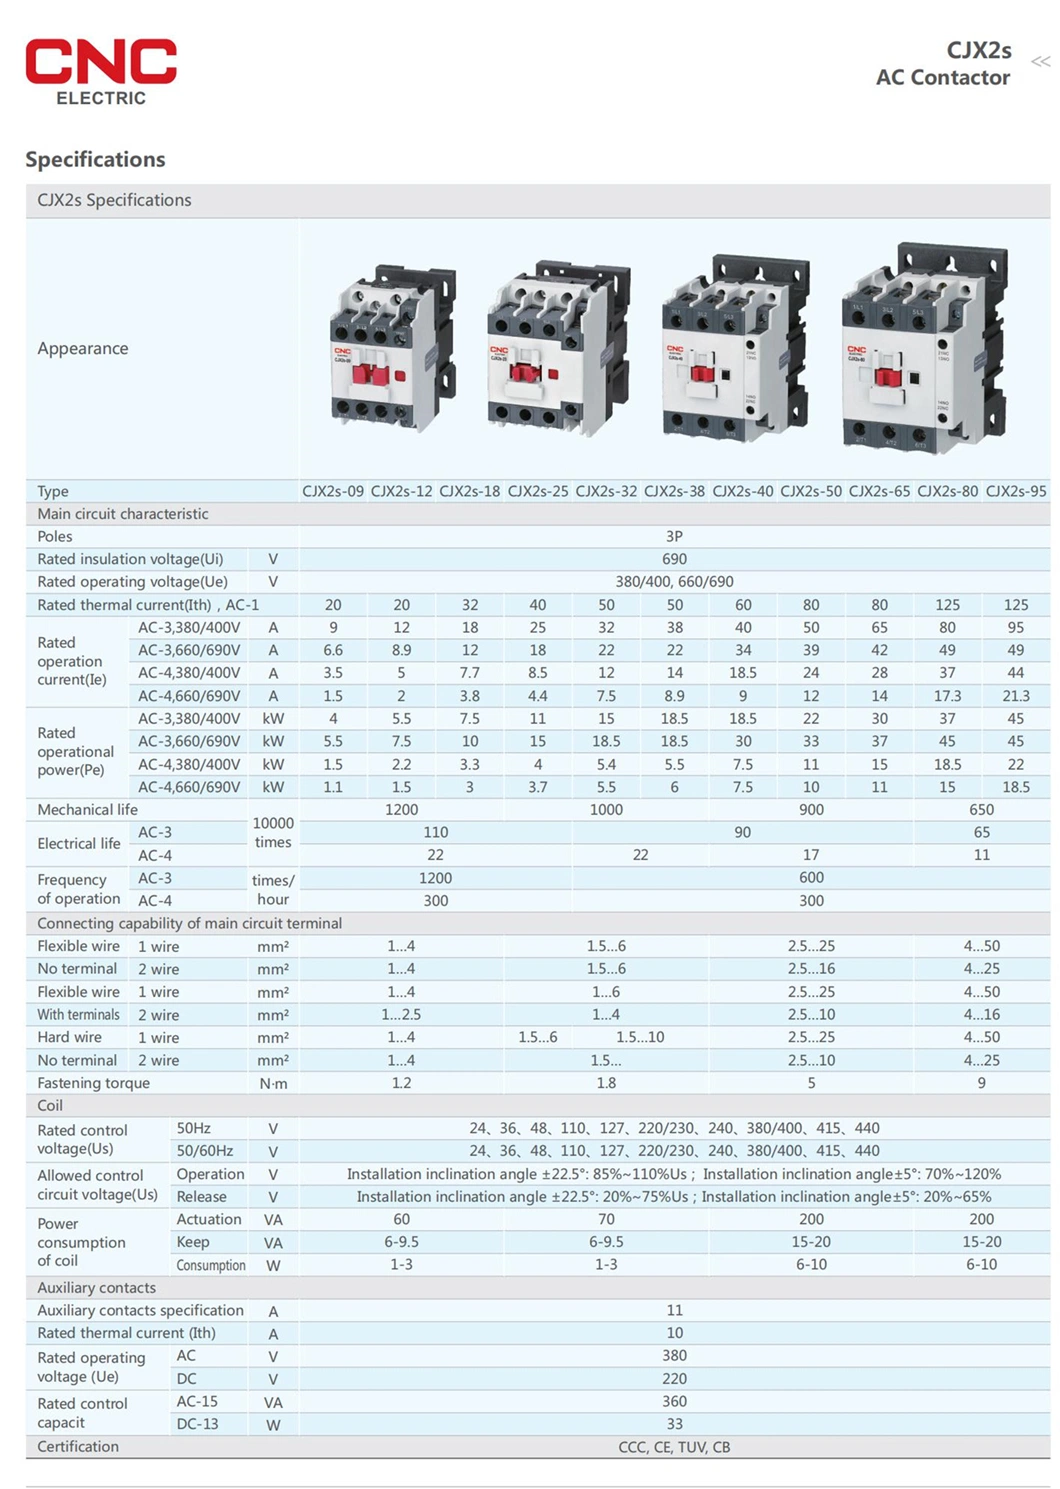 CNC Cjx2s-65 50Hz 65A 3p 110V 1no +1nc AC 3 Poles Magnetic Contactor